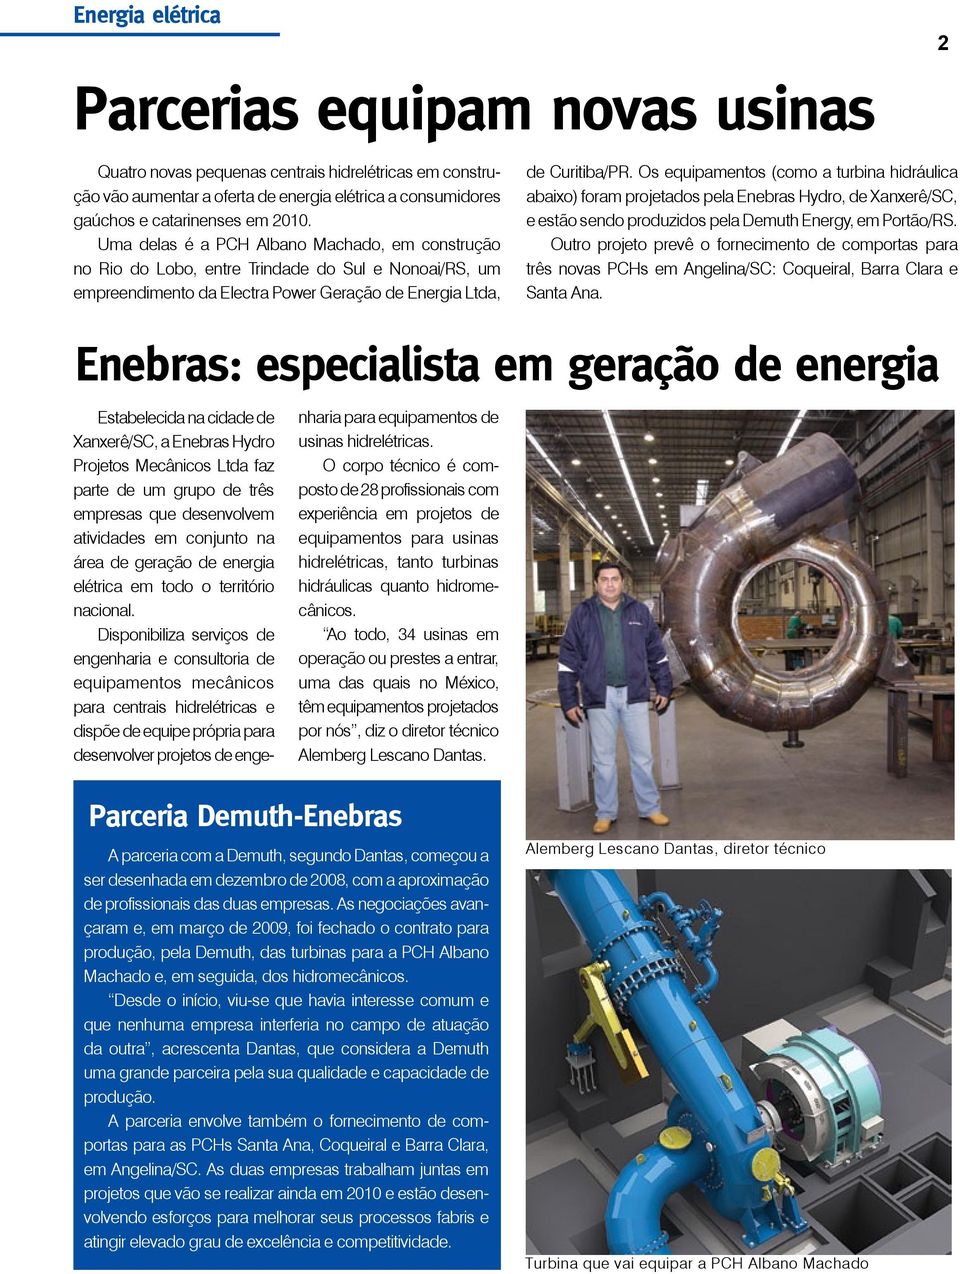 Os equipamentos (como a turbina hidráulica abaixo) foram projetados pela Enebras Hydro, de Xanxerê/SC, e estão sendo produzidos pela Demuth Energy, em Portão/RS.